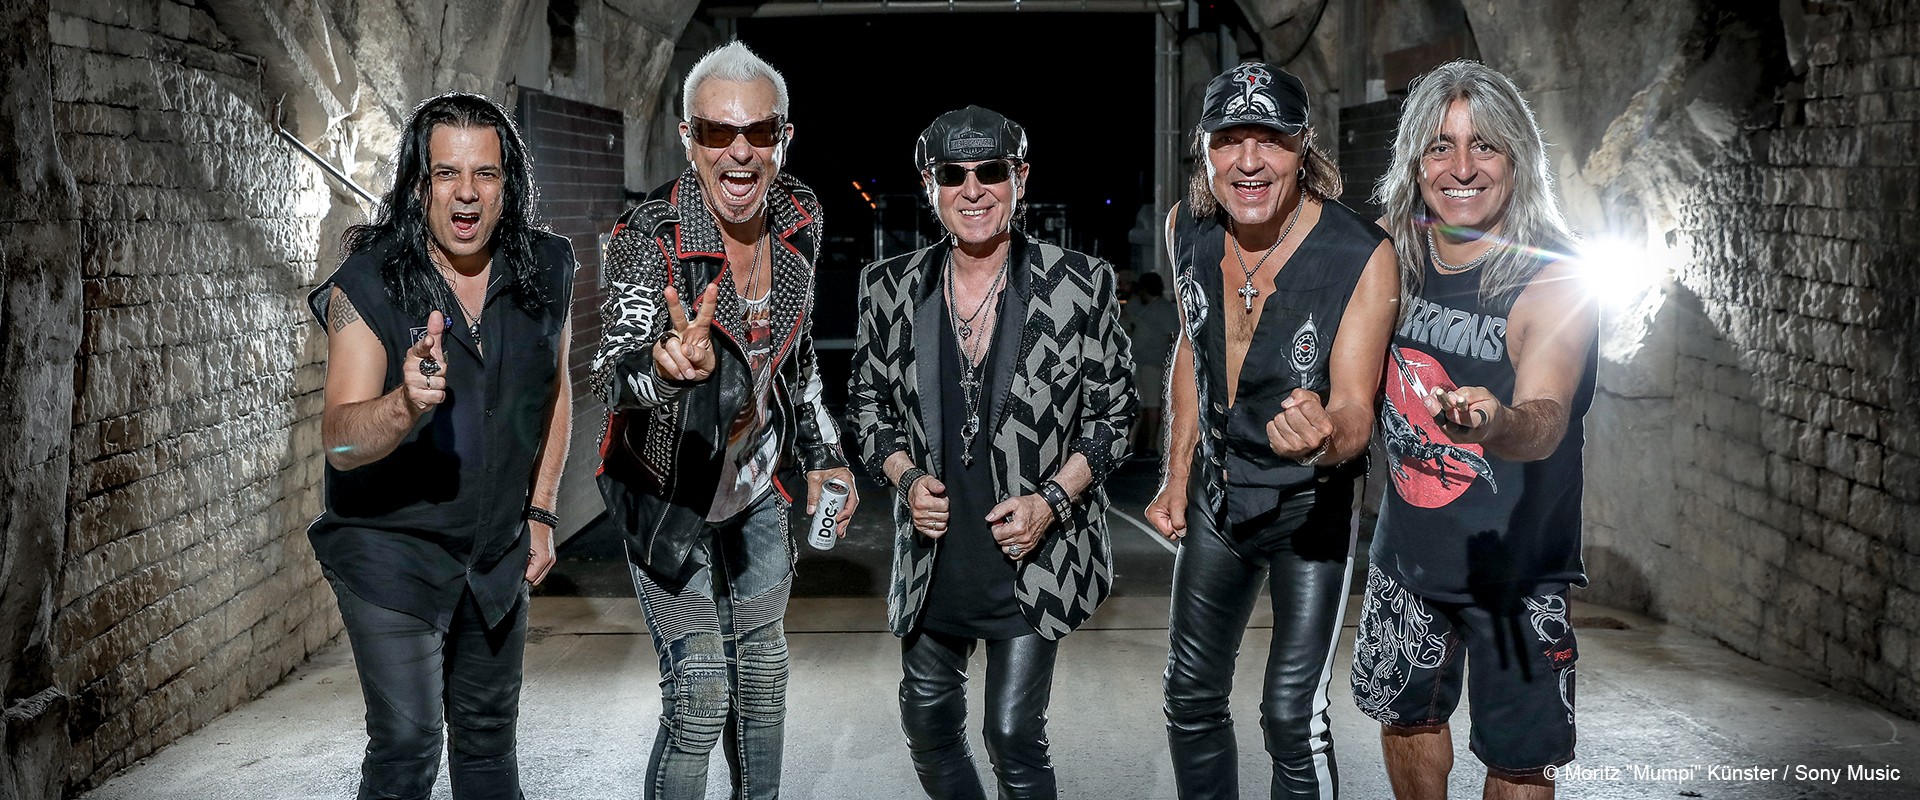 Neues Scorpions Album "Rock Believer" und Welttournee 2022